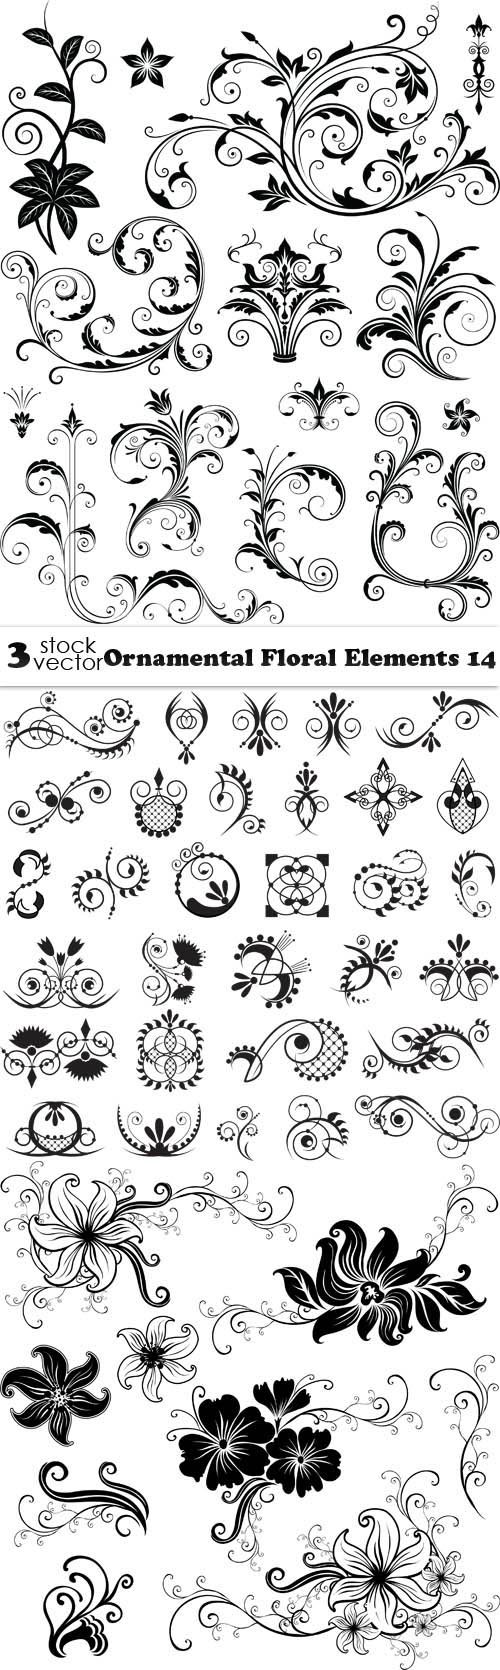 Vectors - Ornamental Floral Elements 14